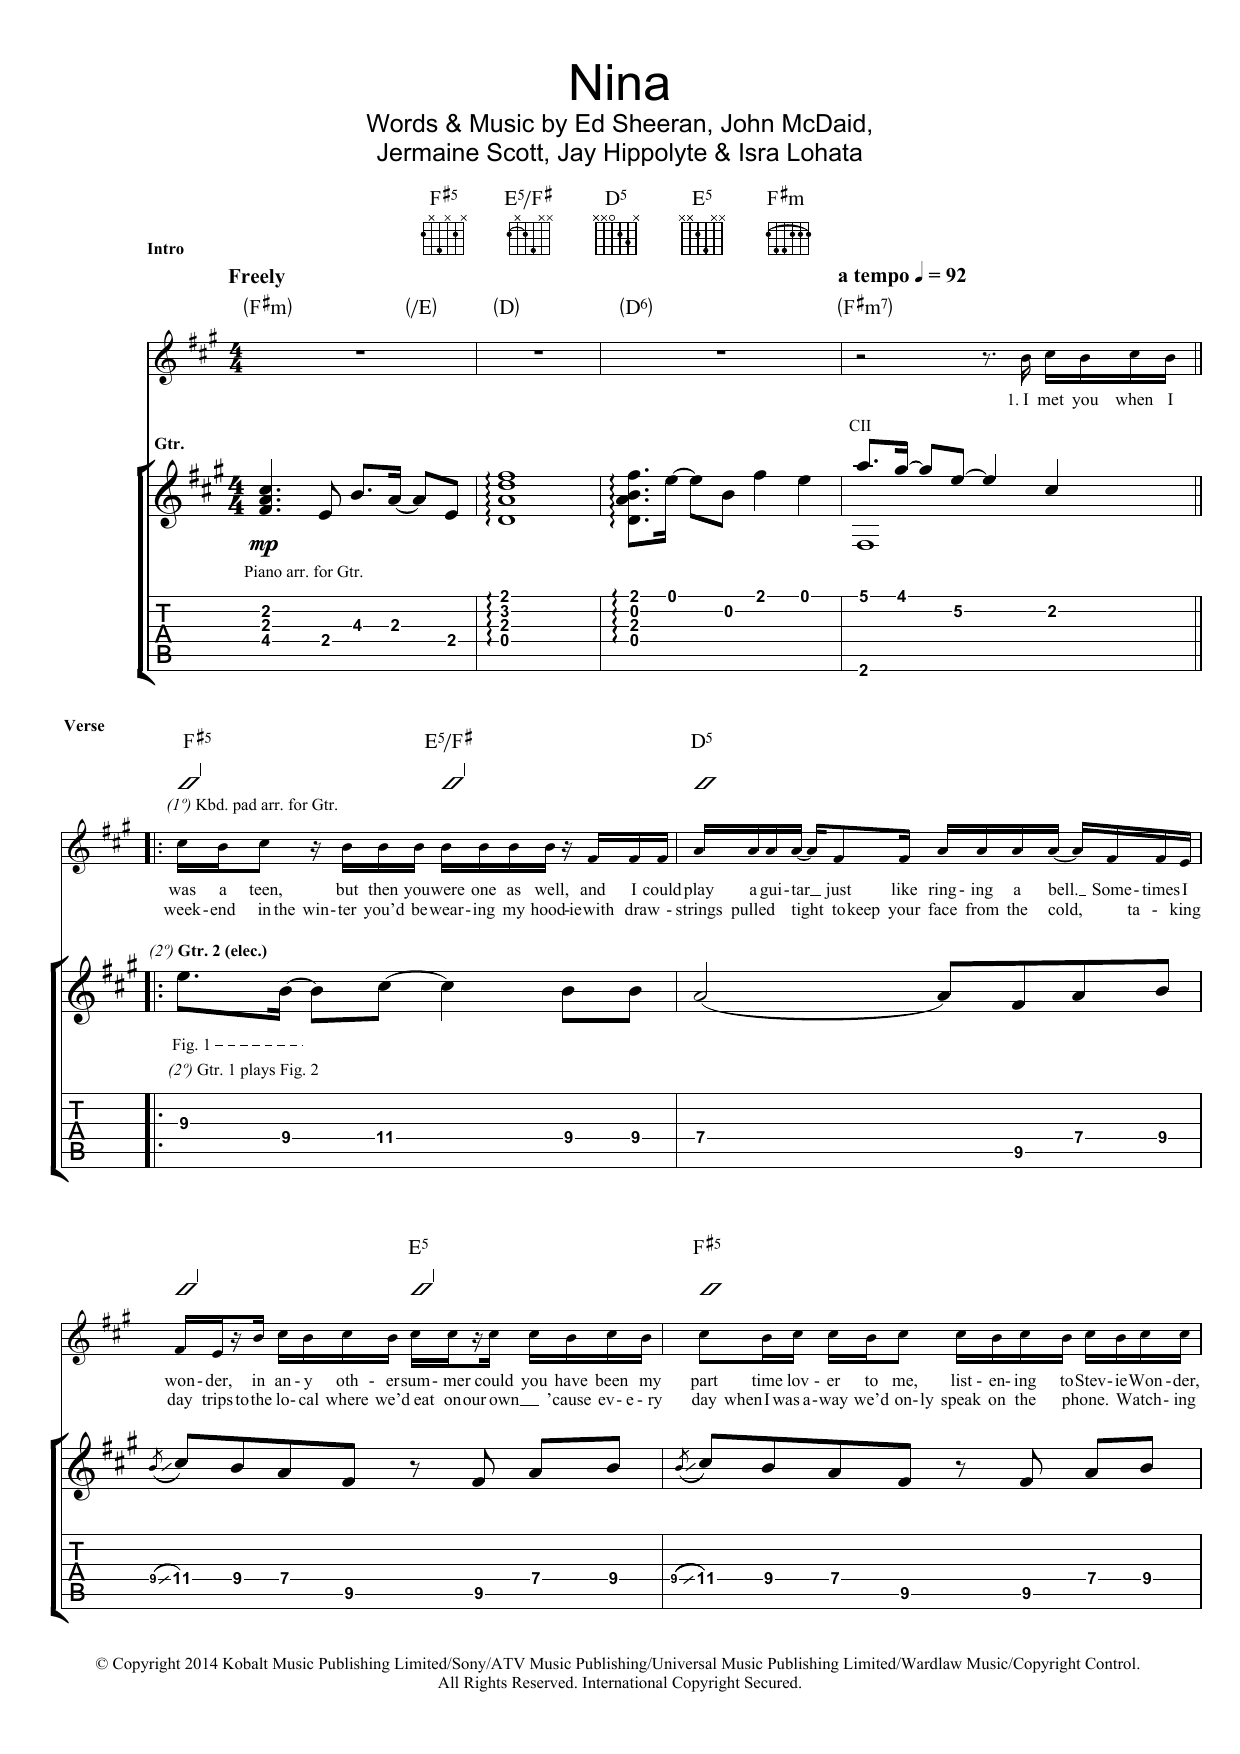 Ed Sheeran Nina sheet music notes and chords arranged for Piano, Vocal & Guitar Chords (Right-Hand Melody)